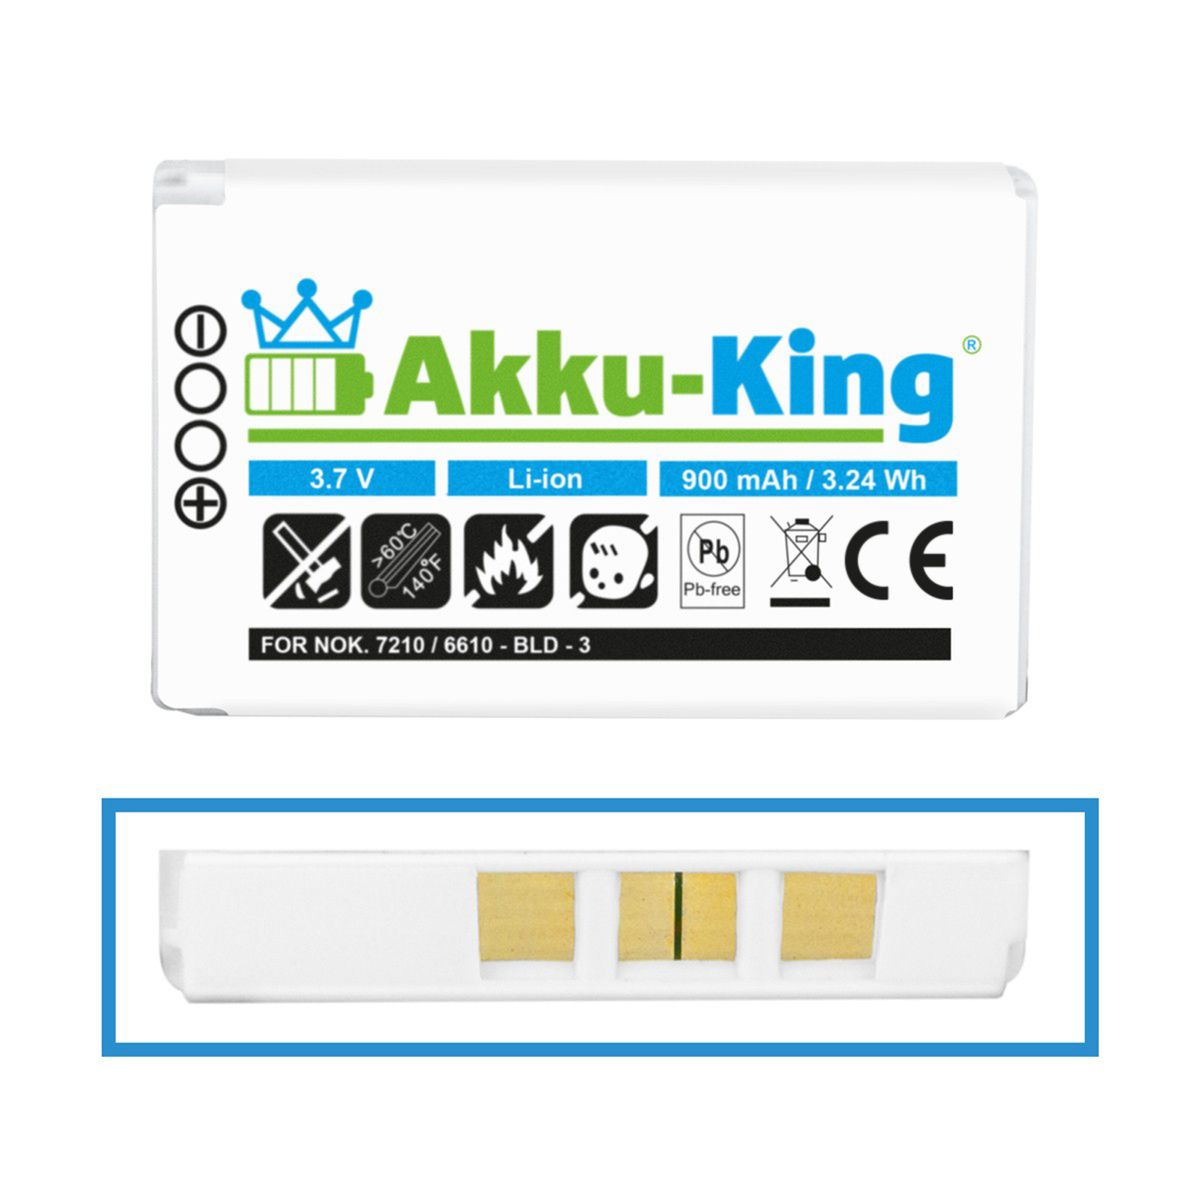 AKKU-KING Akku kompatibel mit Nokia 3.7 900mAh Li-Ion BLD-3 Volt, Handy-Akku